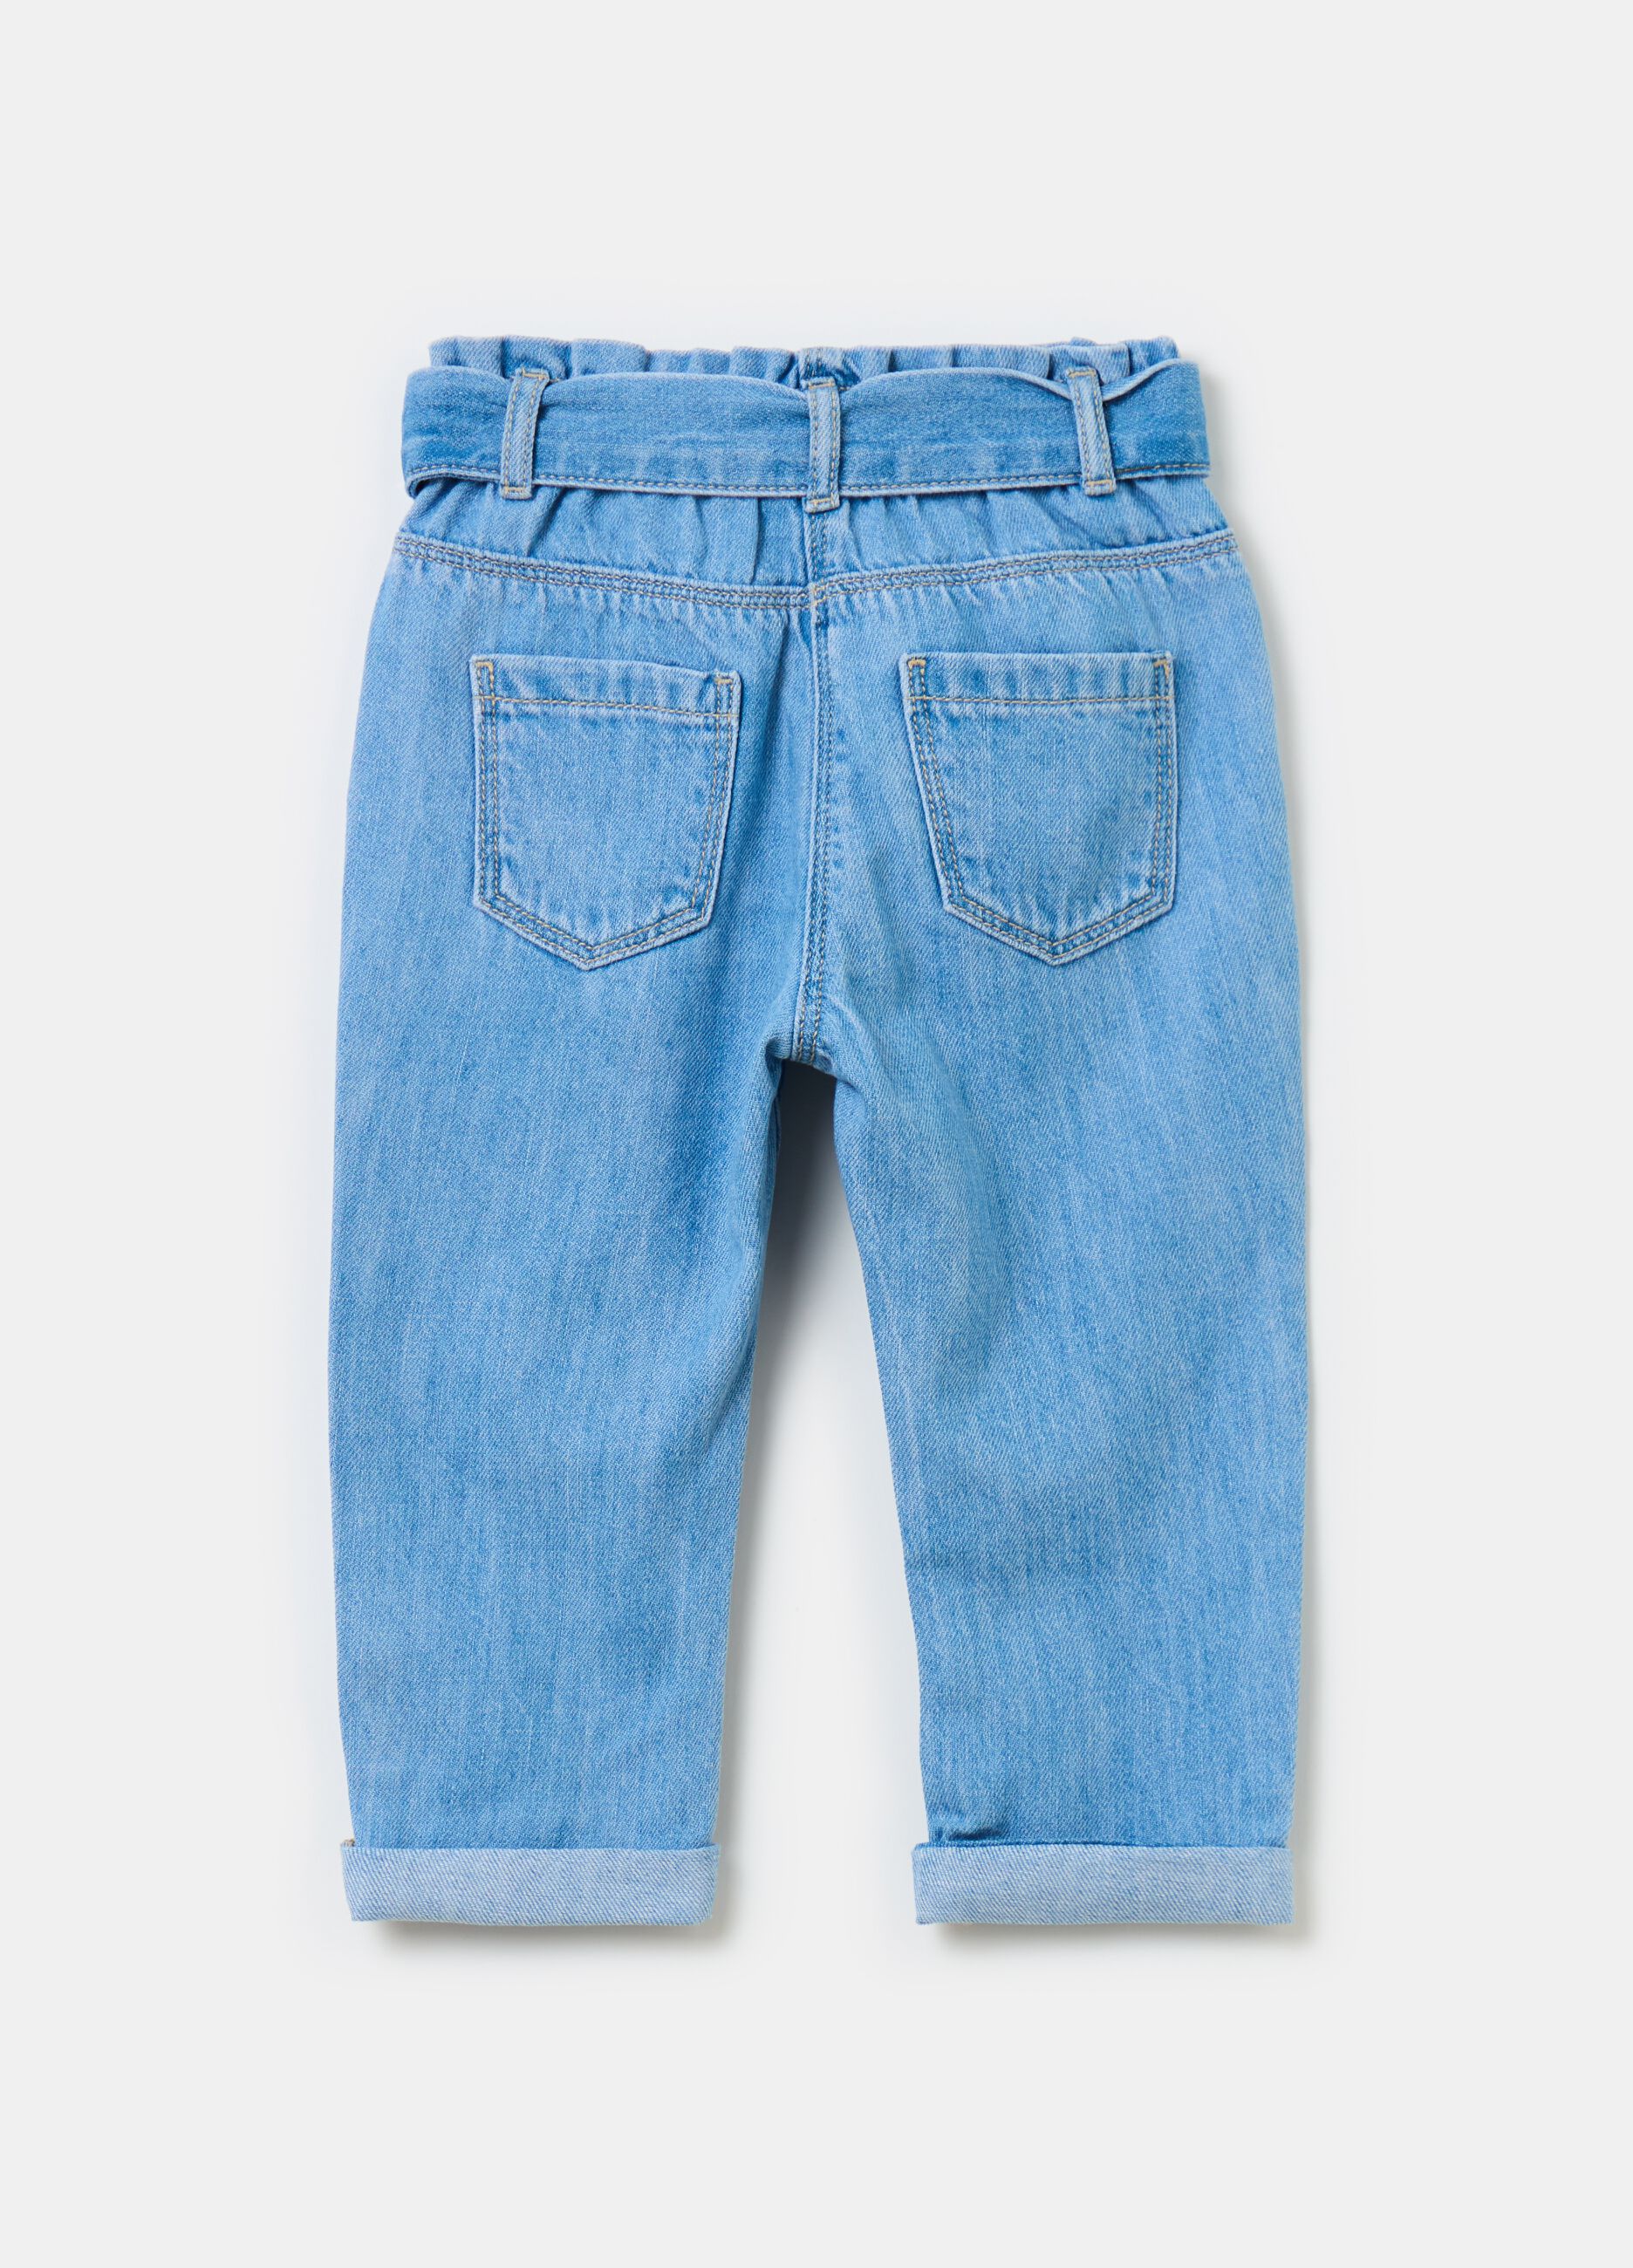 Five-pocket jeans with belt